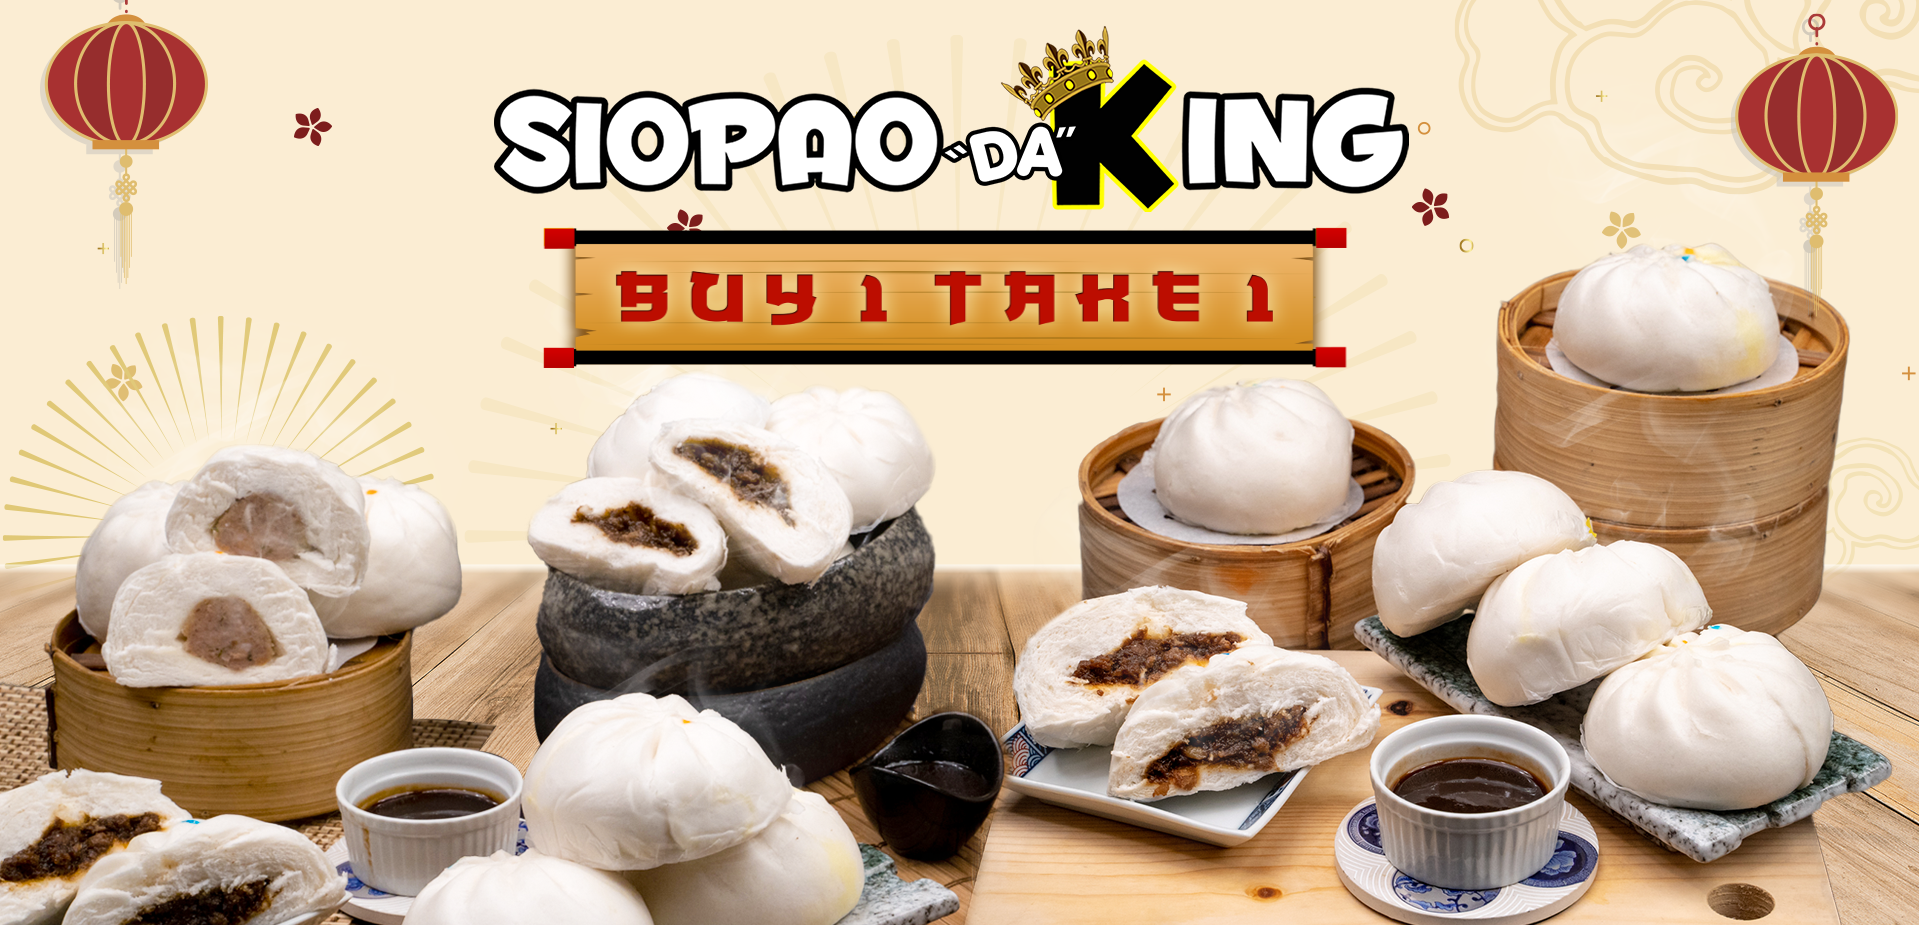 siopao king